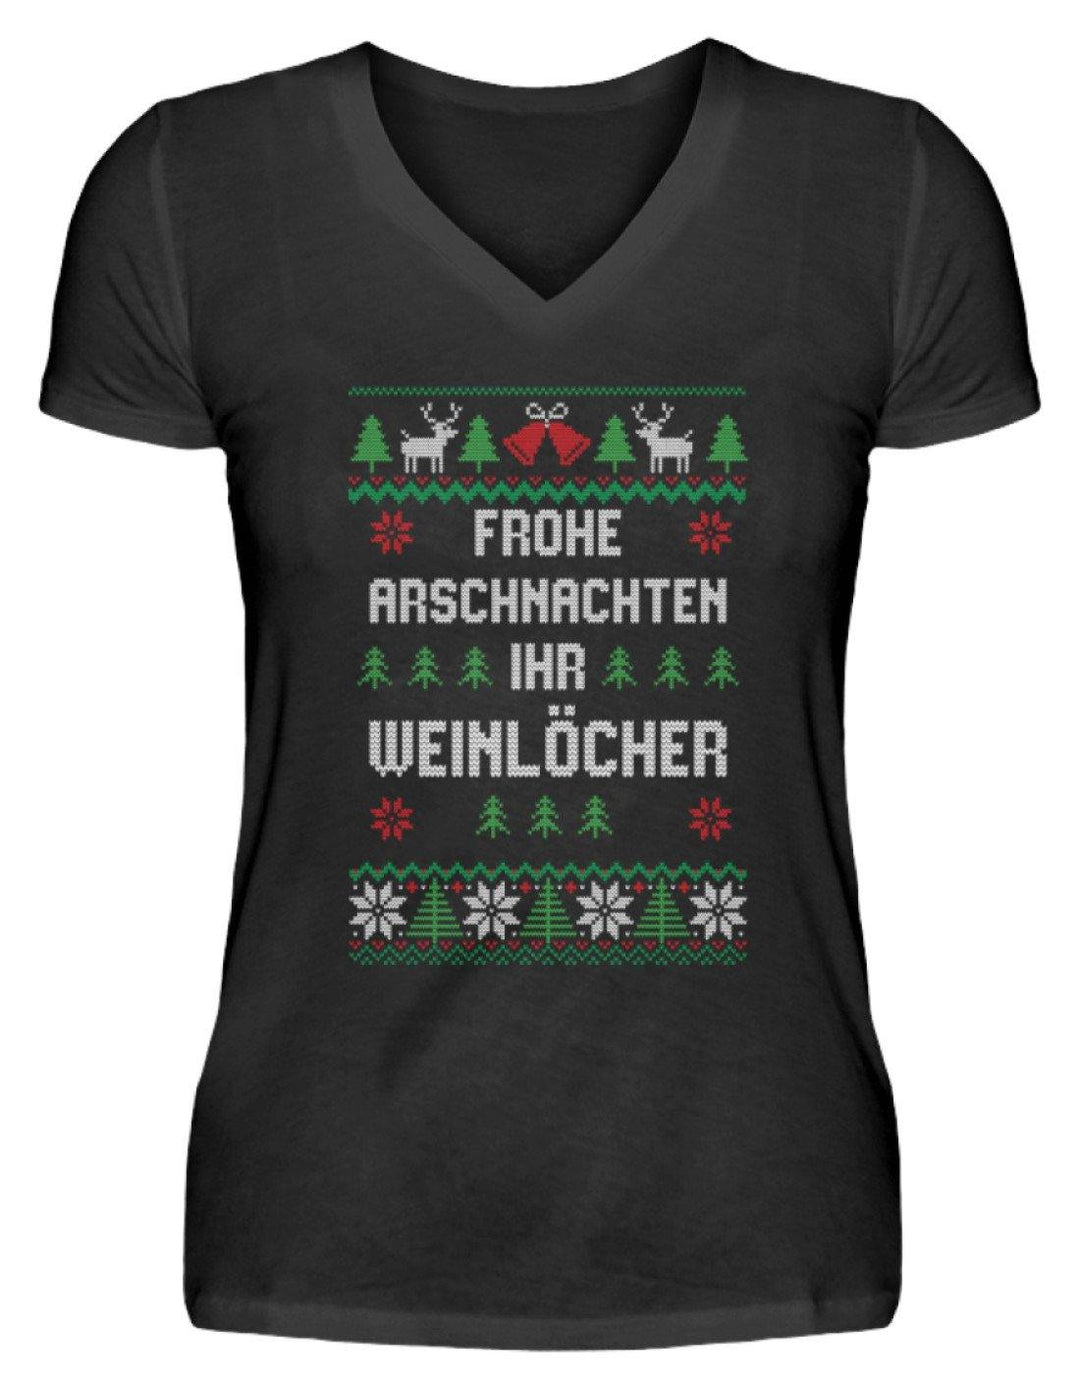 Frohe Arschnachten - Words on Shirts  - V-Neck Damenshirt - Words on Shirts Sag es mit dem Mittelfinger Shirts Hoodies Sweatshirt Taschen Gymsack Spruch Sprüche Statement